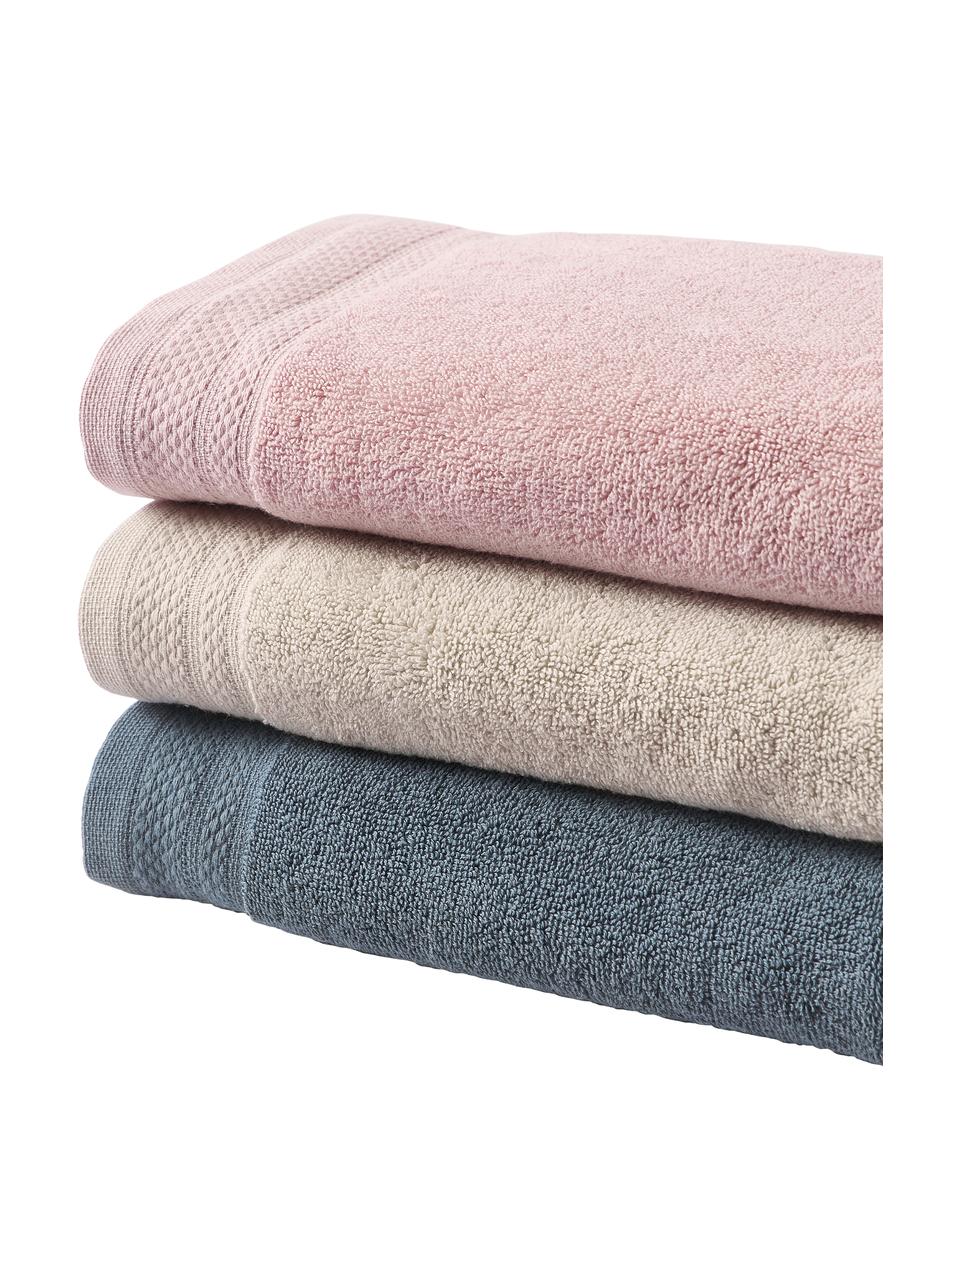 Komplet ręczników z bawełny organicznej Premium, 3 elem., Brudny różowy, Komplet z różnymi rozmiarami